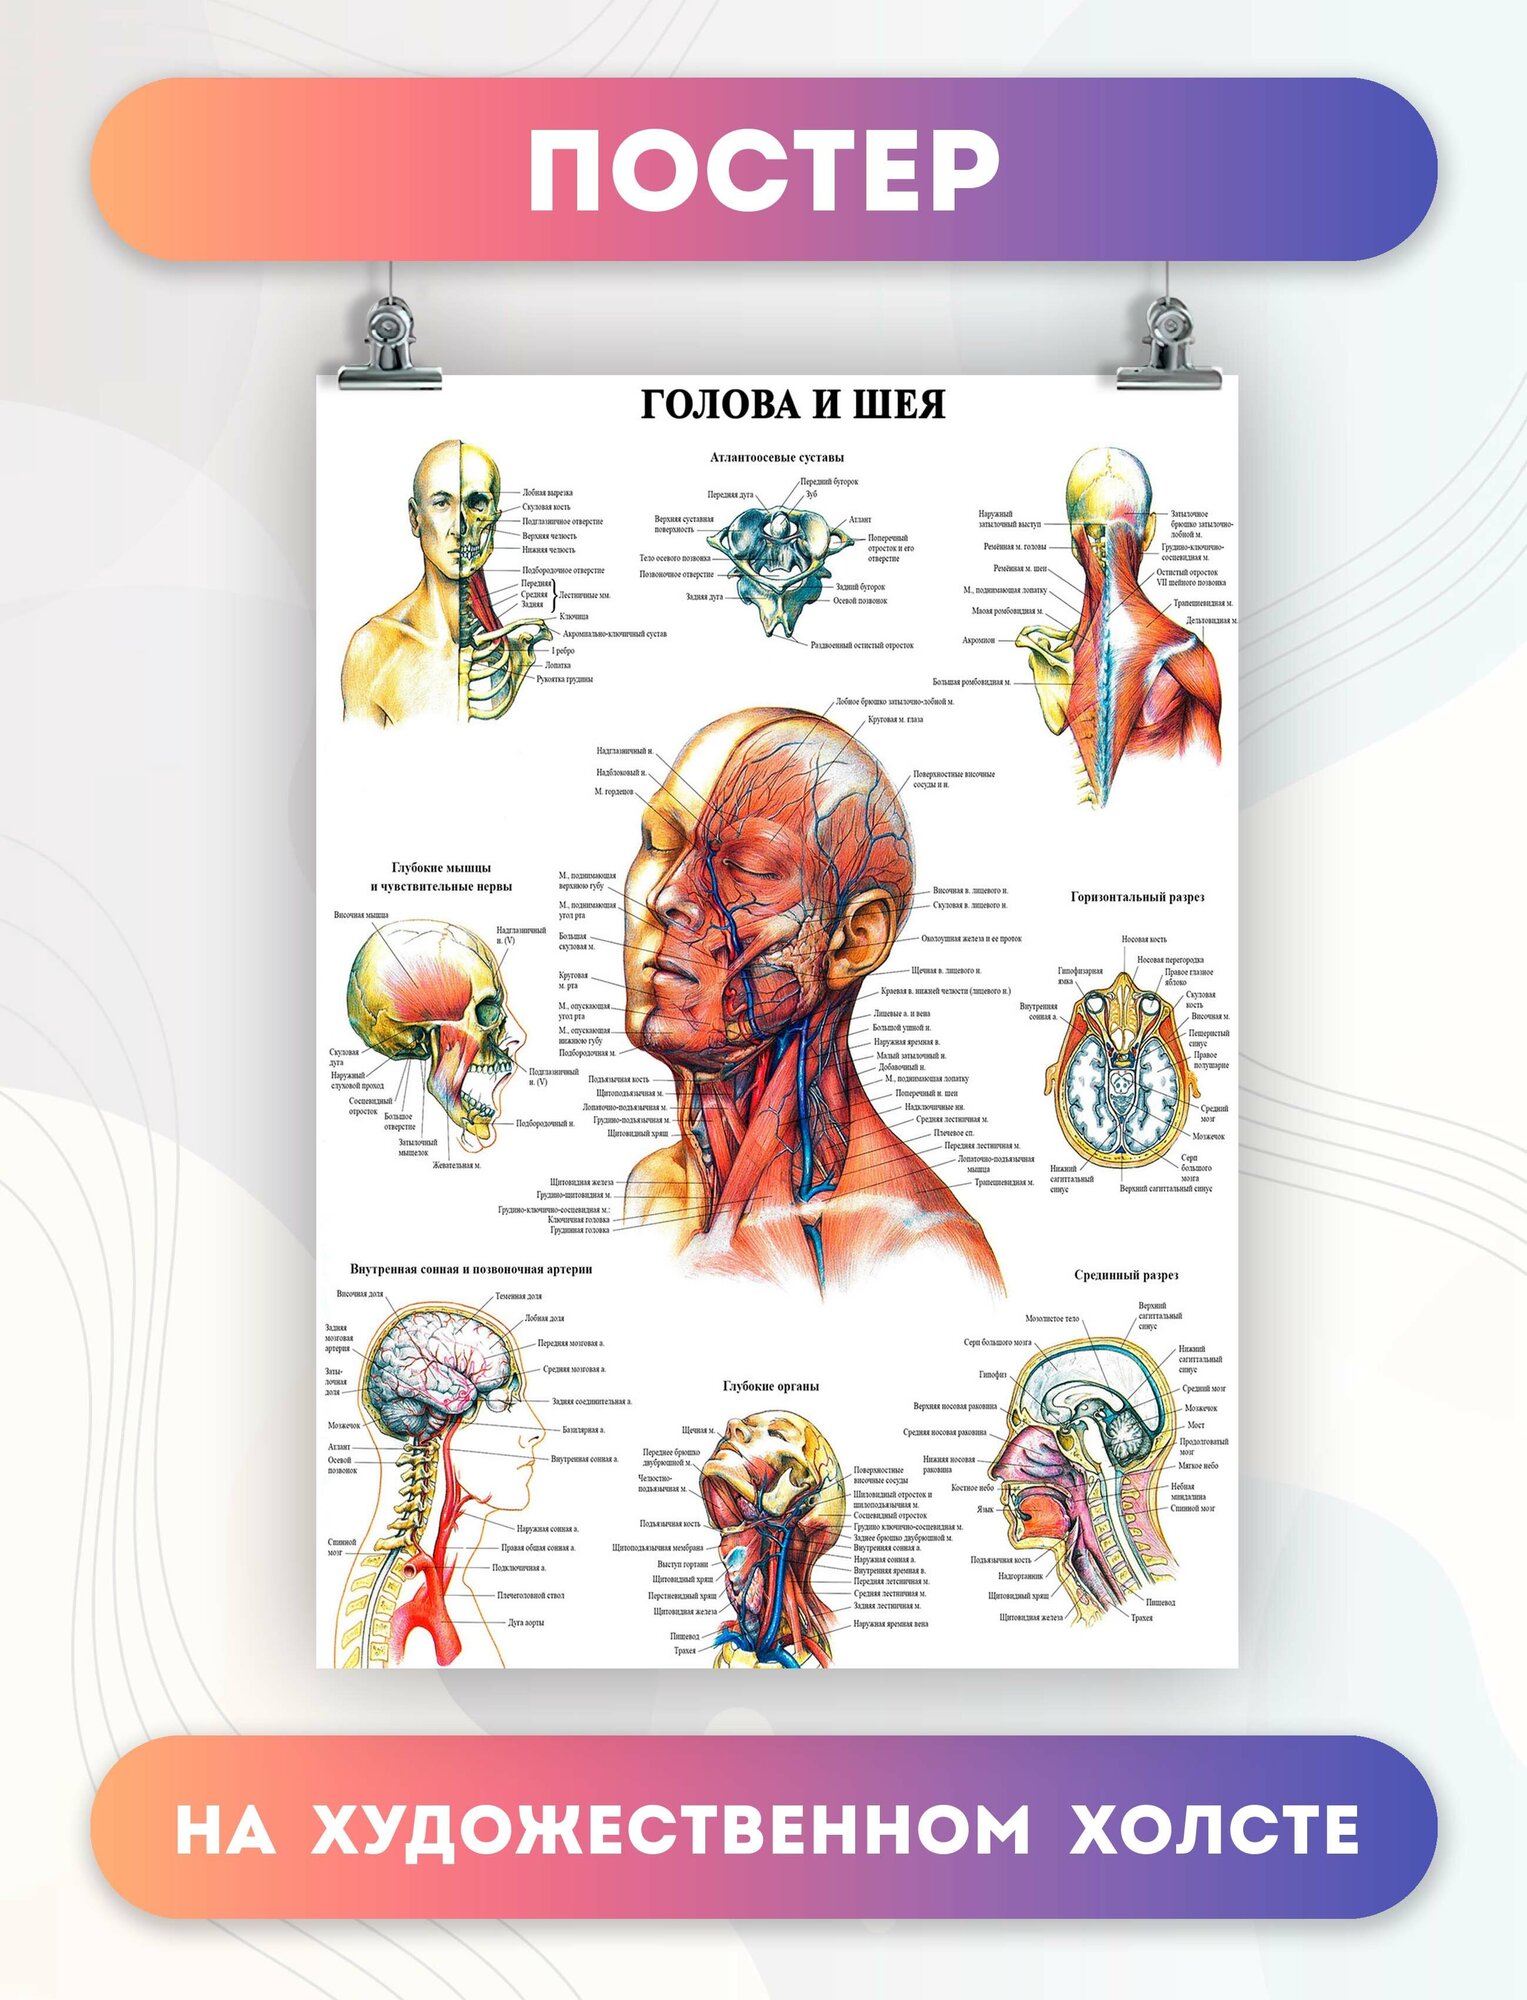 Постеры голова и шея больницы медицина (17)